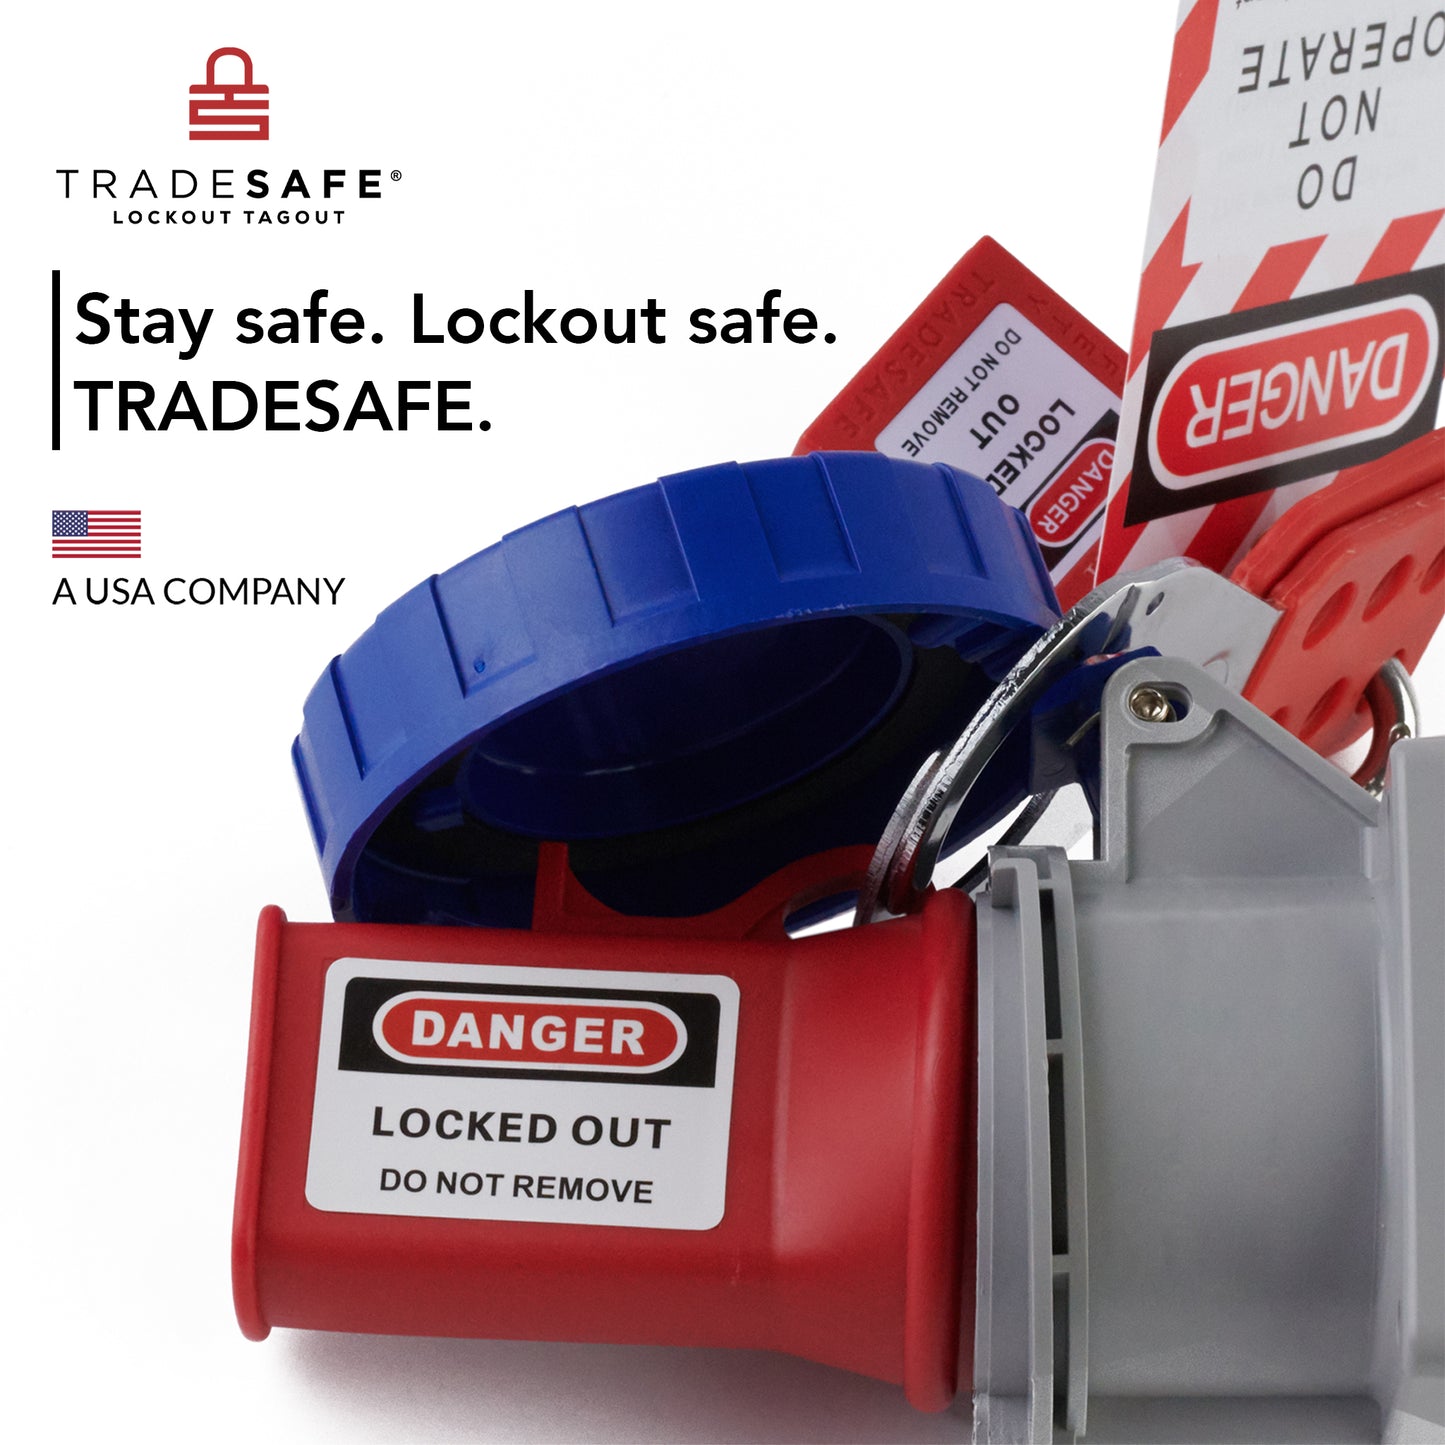 lockout tagout socket lockout brand image; stay safe lockout safe tradesafe